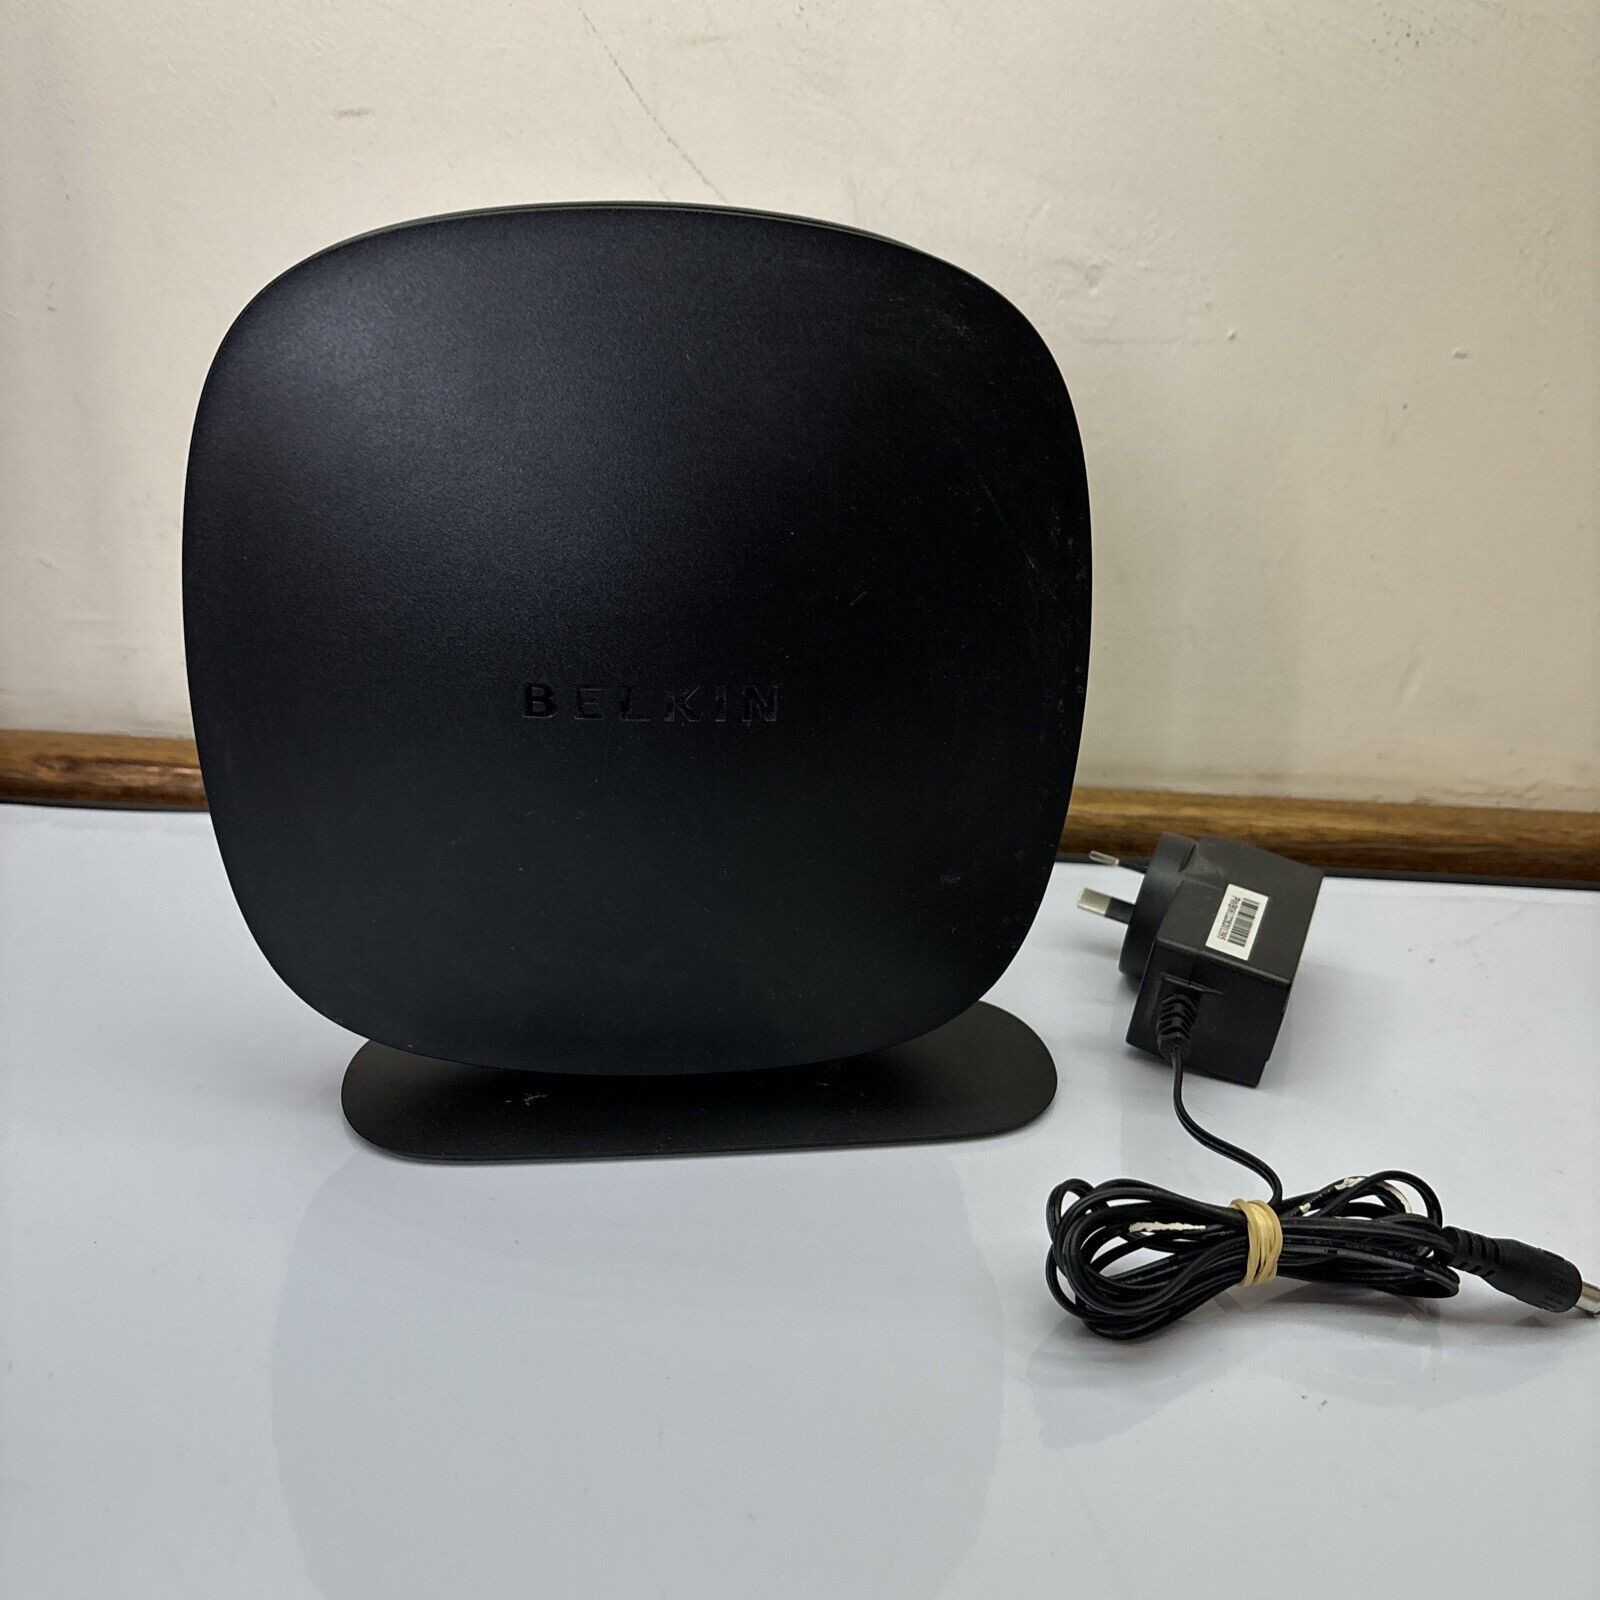 Belkin N300 Wireless N Modem Router F9J1002v1 NBN Compatible